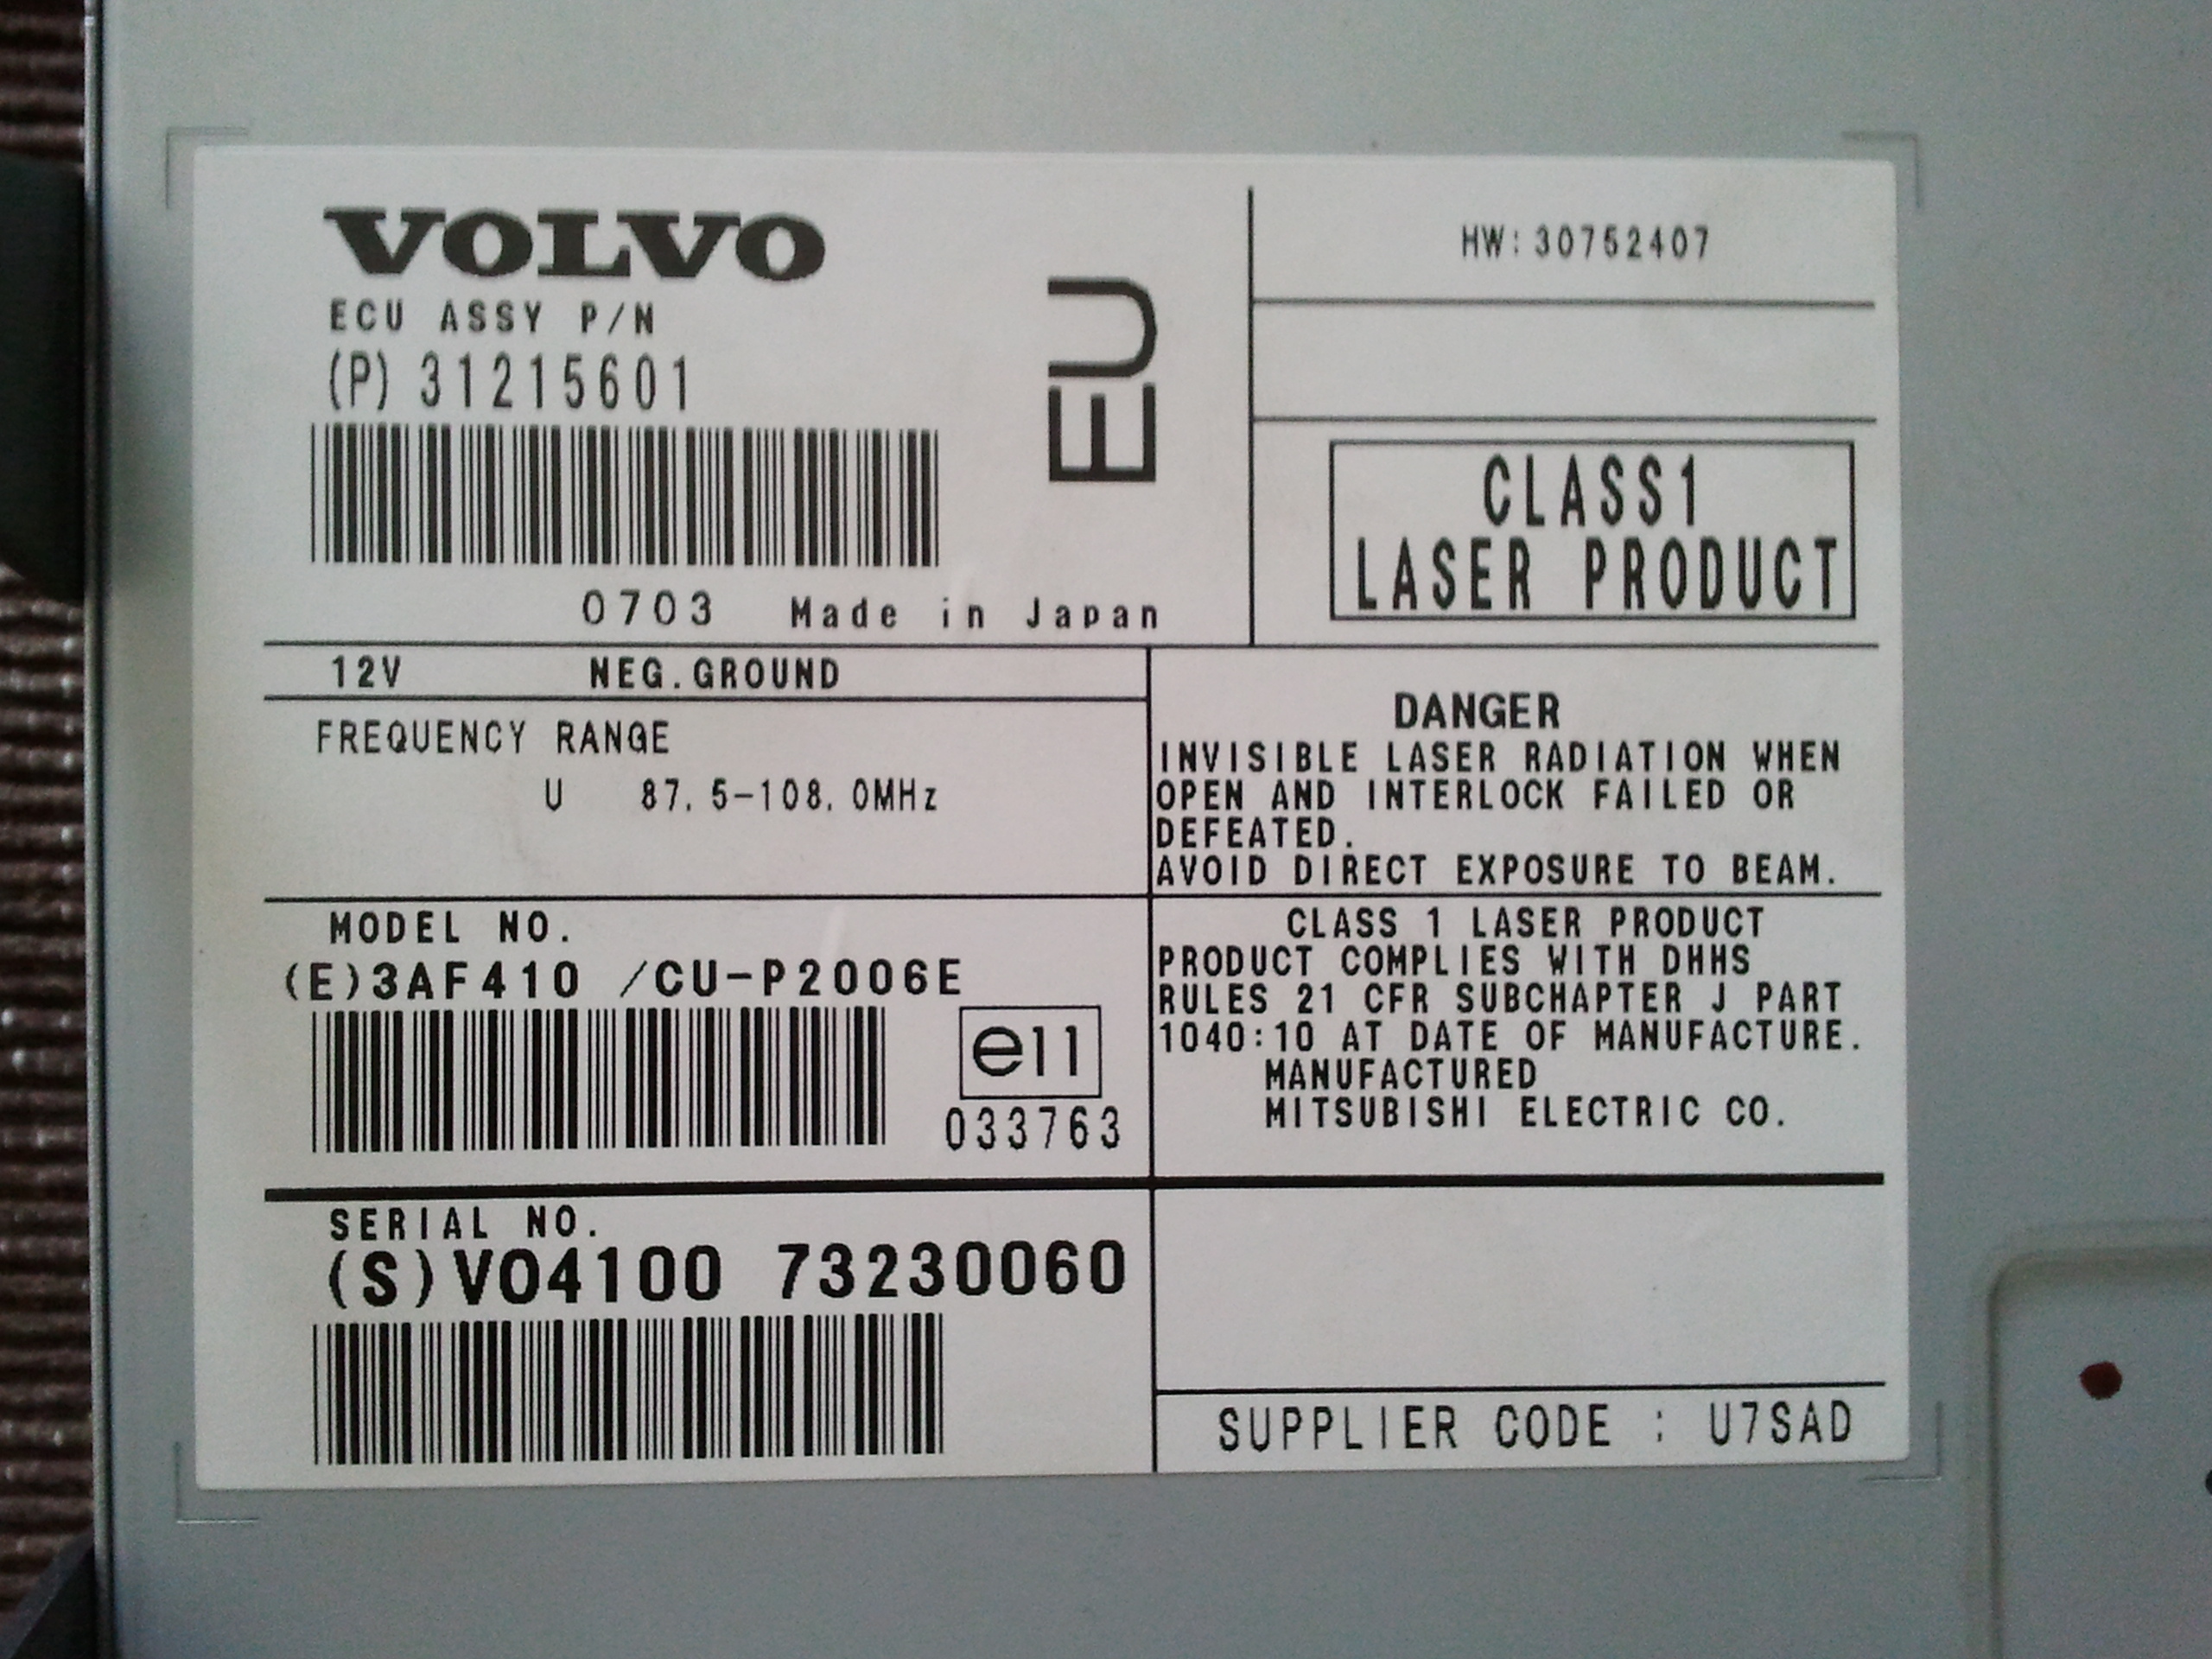 Volvo Rti/Mmi+] - Naprawa - Kalibracja Lasera?/Wymiana Napędu Dvd?